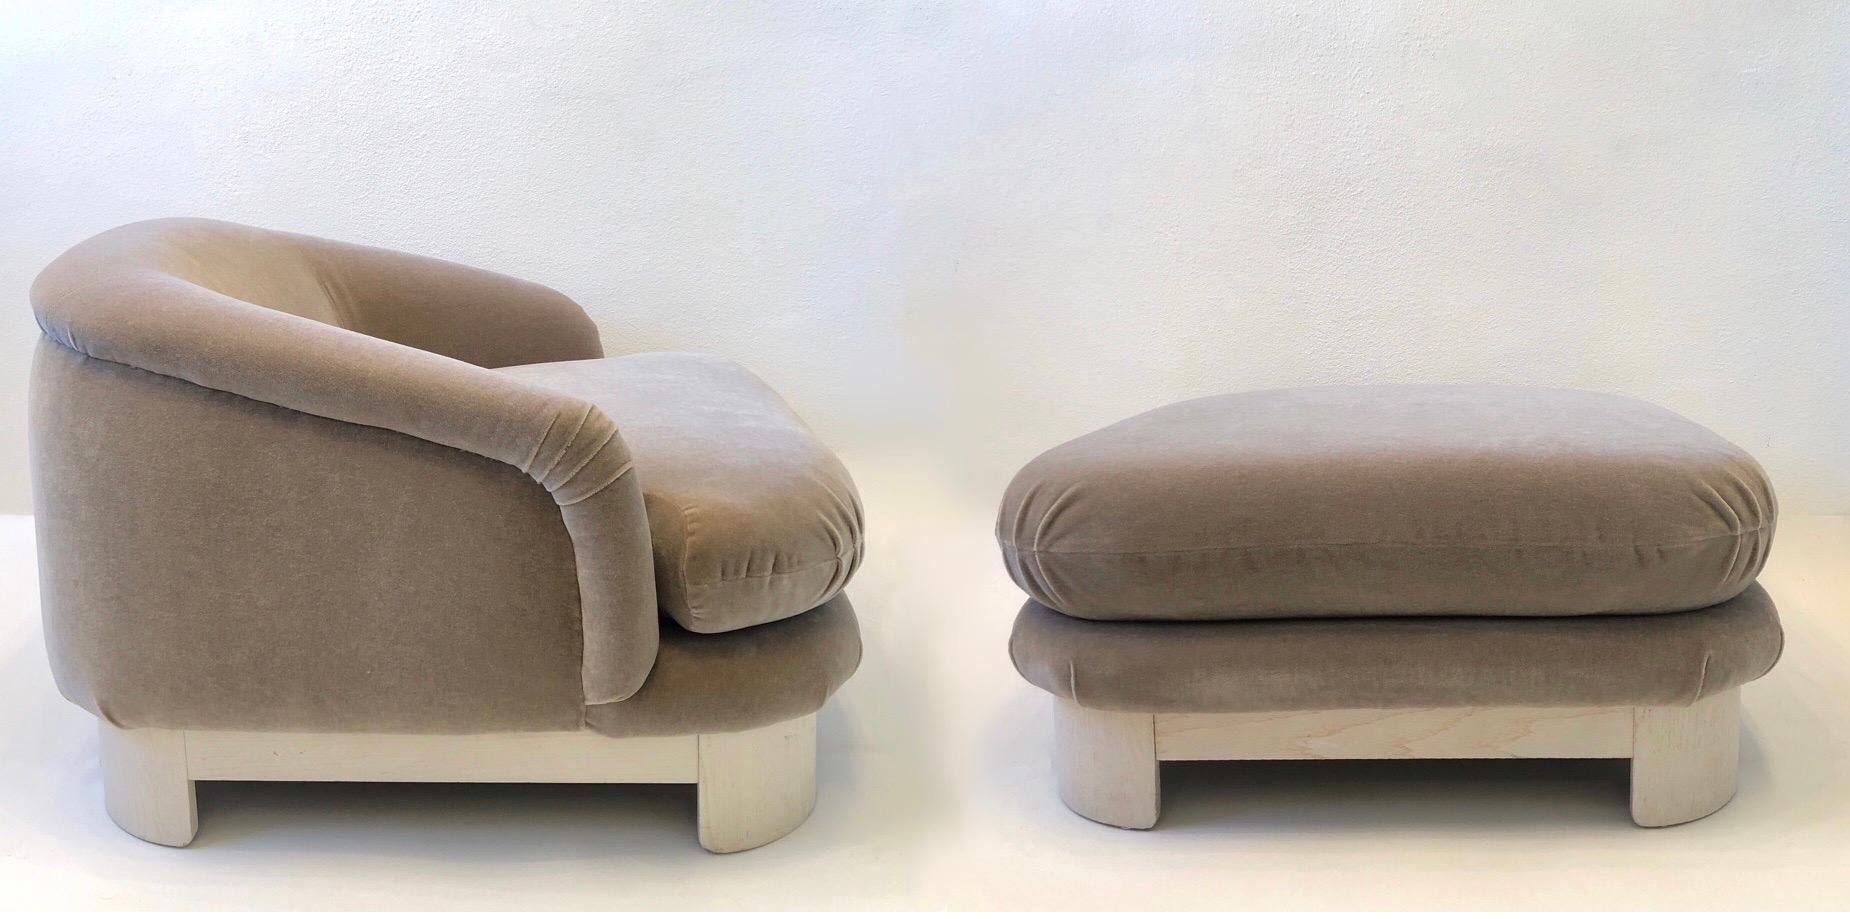 Une paire spectaculaire de grandes chaises longues et un ottoman par Thayer Coggin.
Il s'agit d'un ensemble rare datant des années 1990. Les deux chaises conservent le labeur de Thayer Coggin.
Nouvellement recouvert d'un tissu mohair blanc cassé,